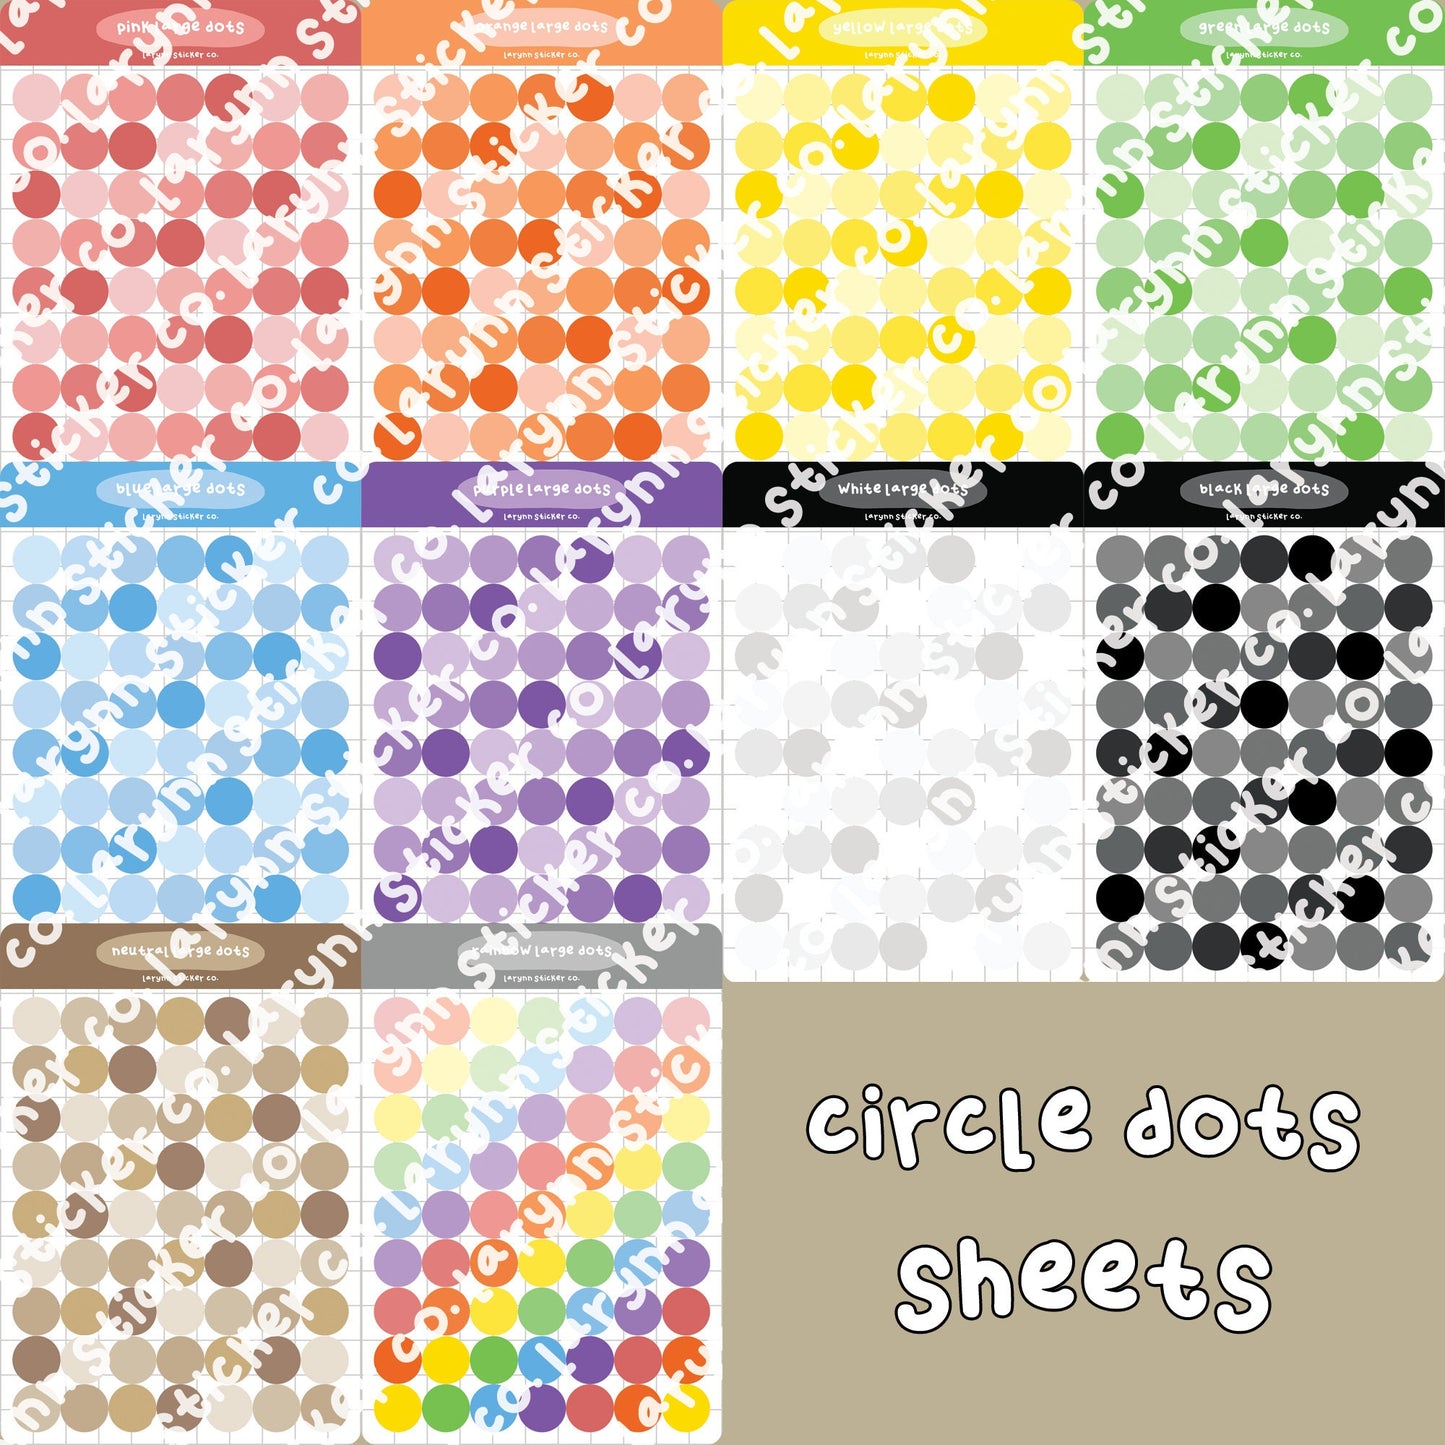 Dots Deco Sticker Sheet